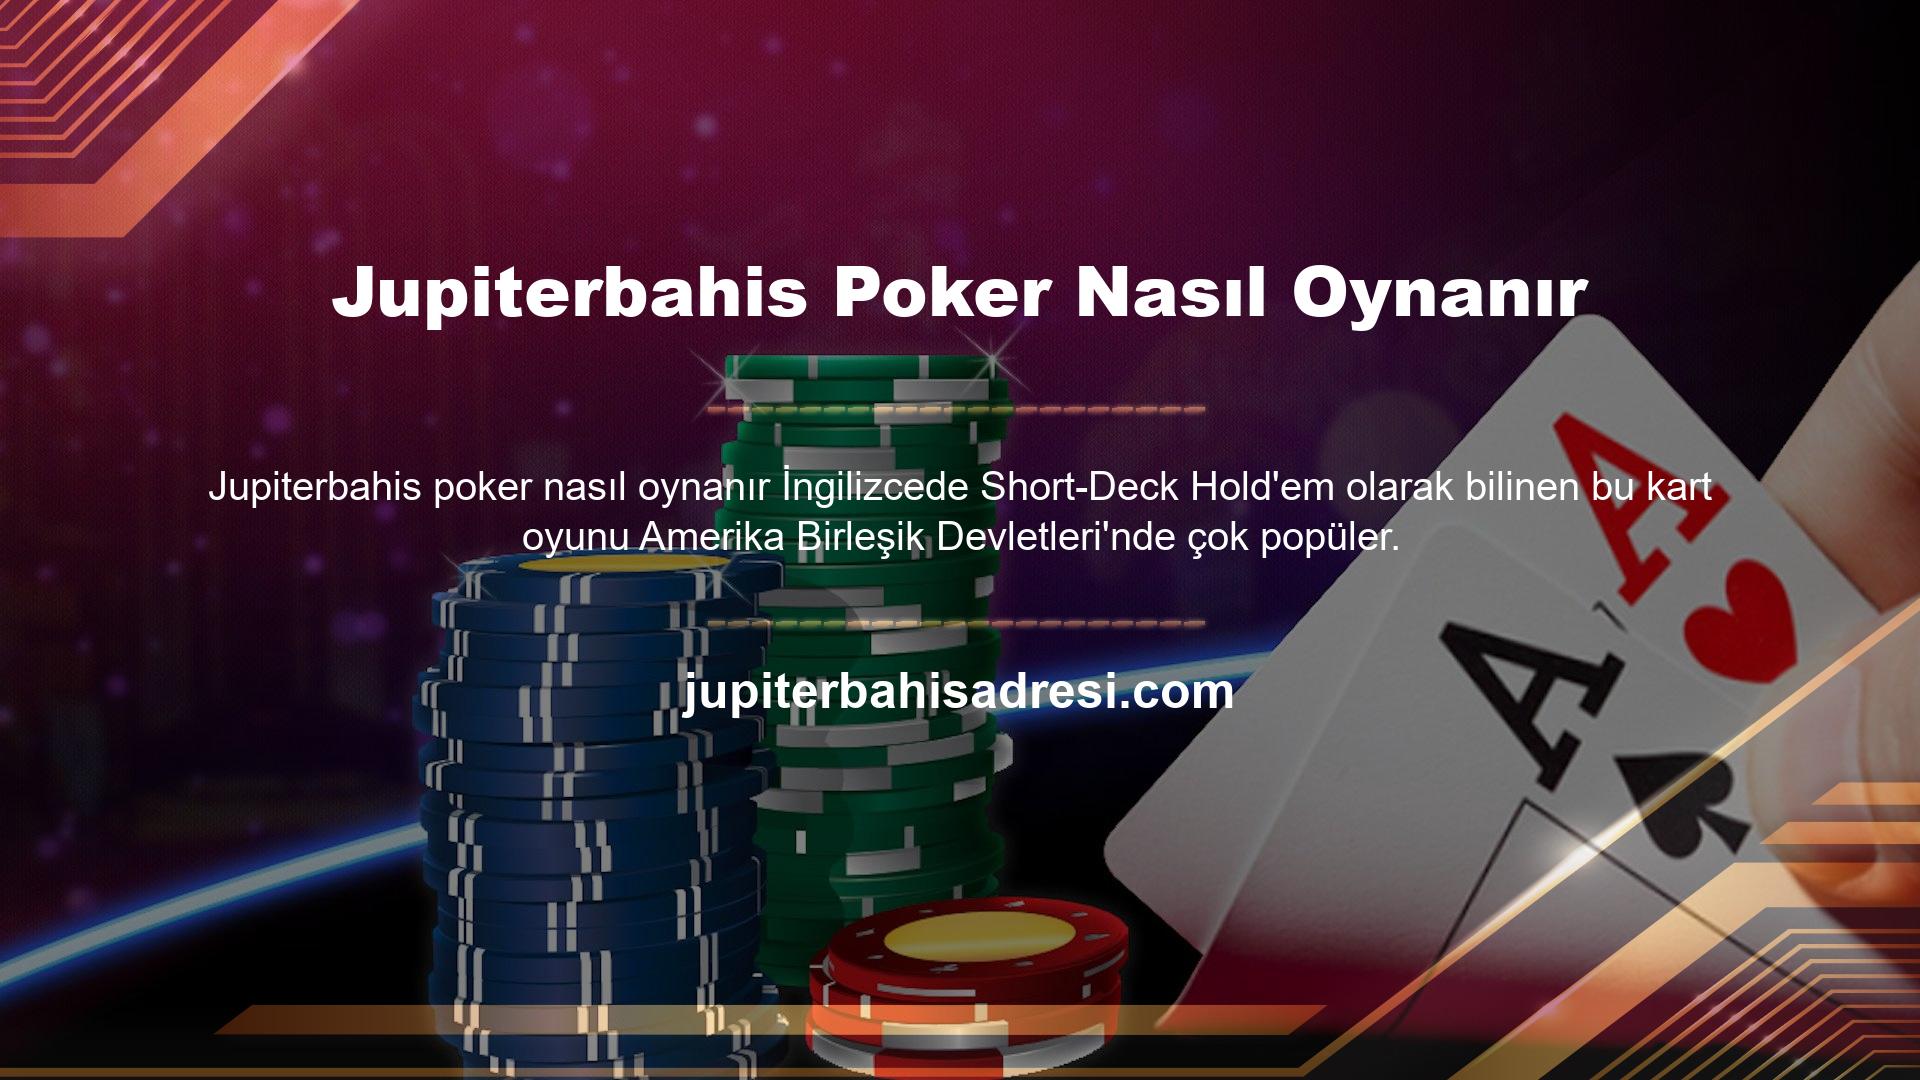 Jupiterbahis Poker Nasıl Oynanır